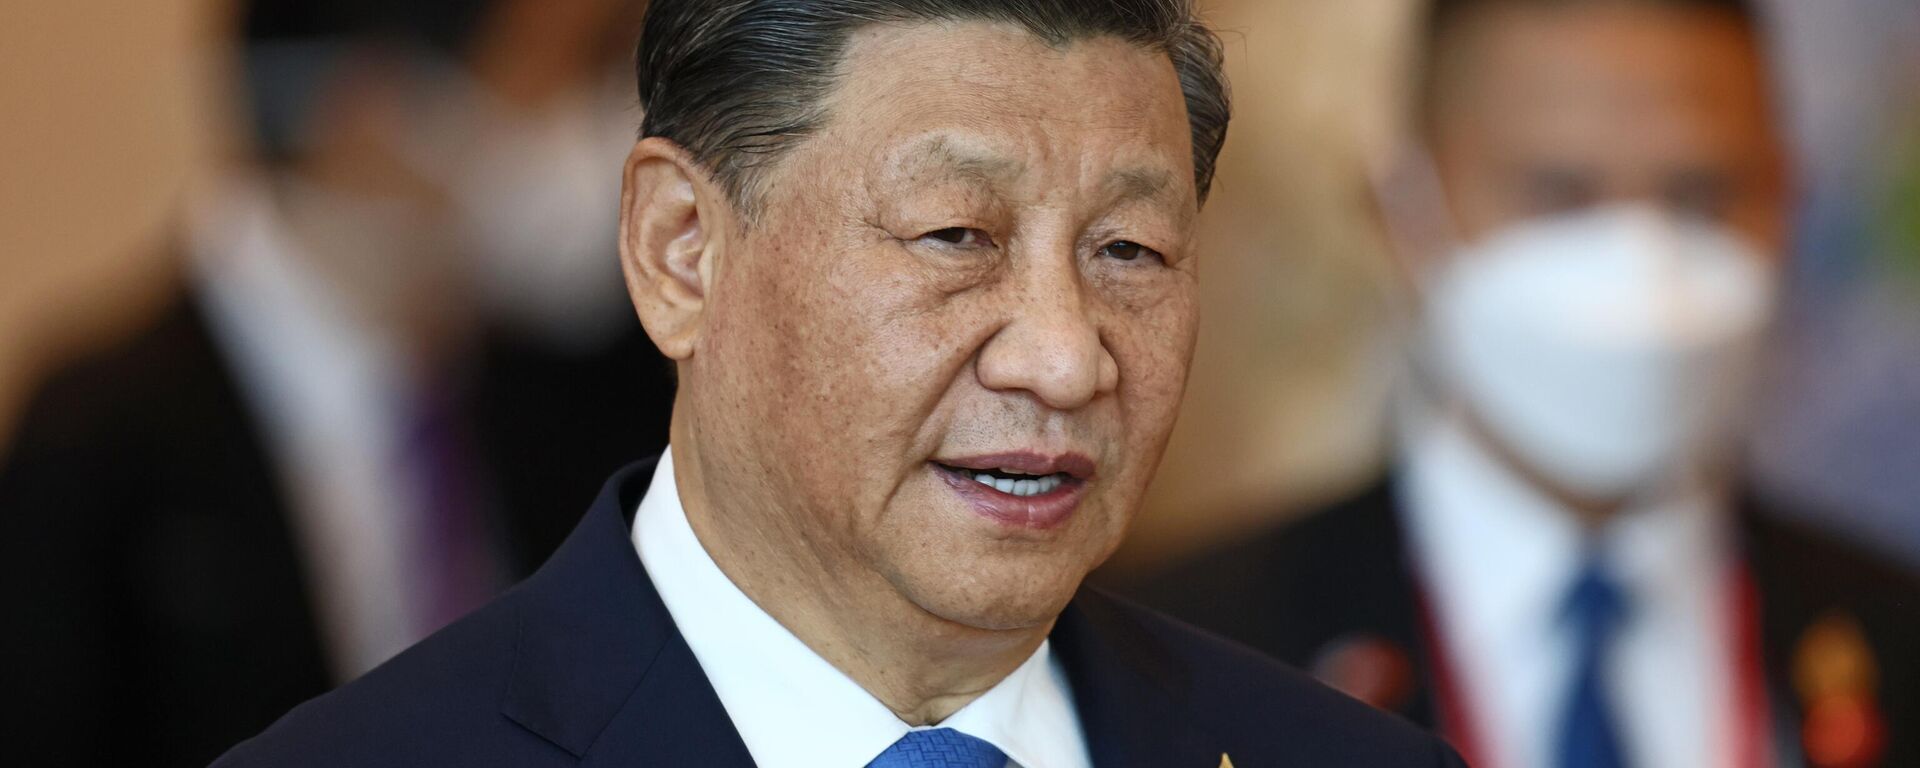 Xi Jinping, presidente de China, en la Reunión de Líderes Económicos de la APEC durante la cumbre del Foro de Cooperación Económica Asia-Pacífico, en Bangkok, Tailandia, el 19 de noviembre de 2022 - Sputnik Mundo, 1920, 23.08.2023